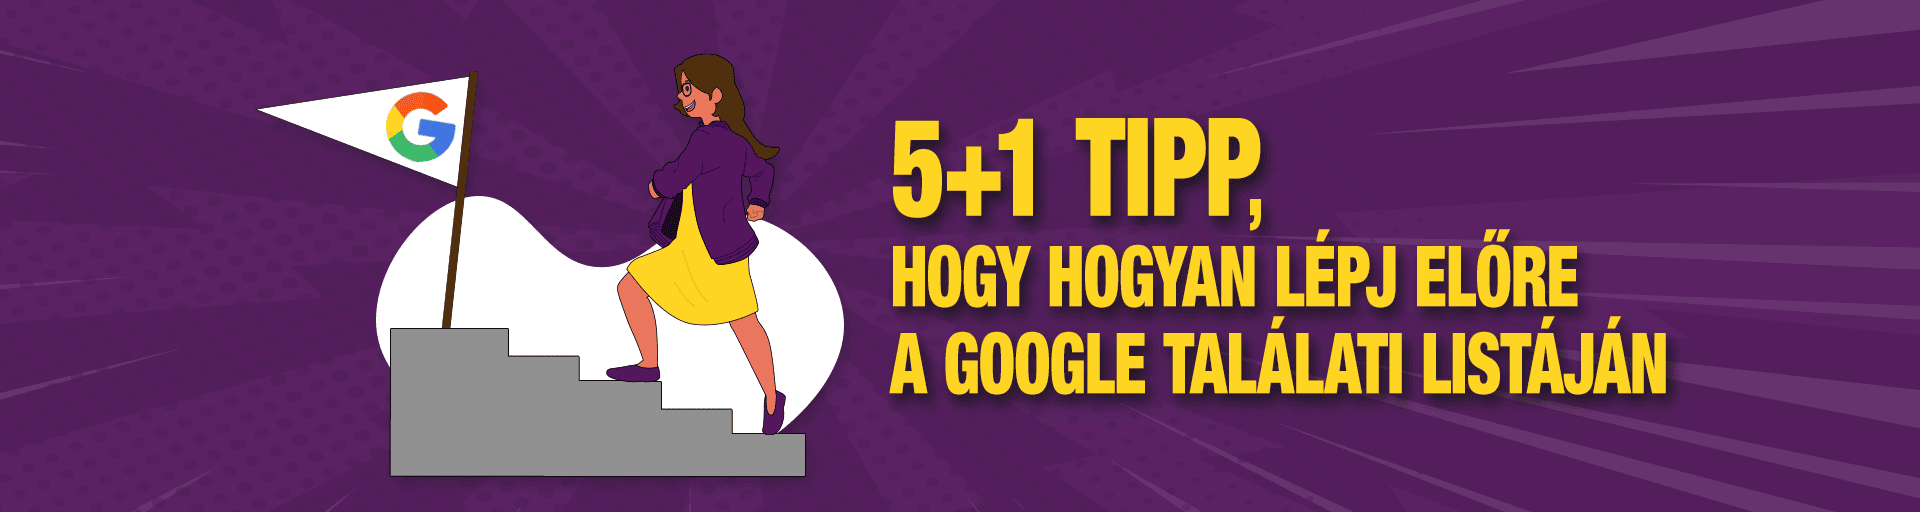 Hogyan lépjünk előre a Google találati listájában? 5+1 tipp, amit neked is tudnod kell